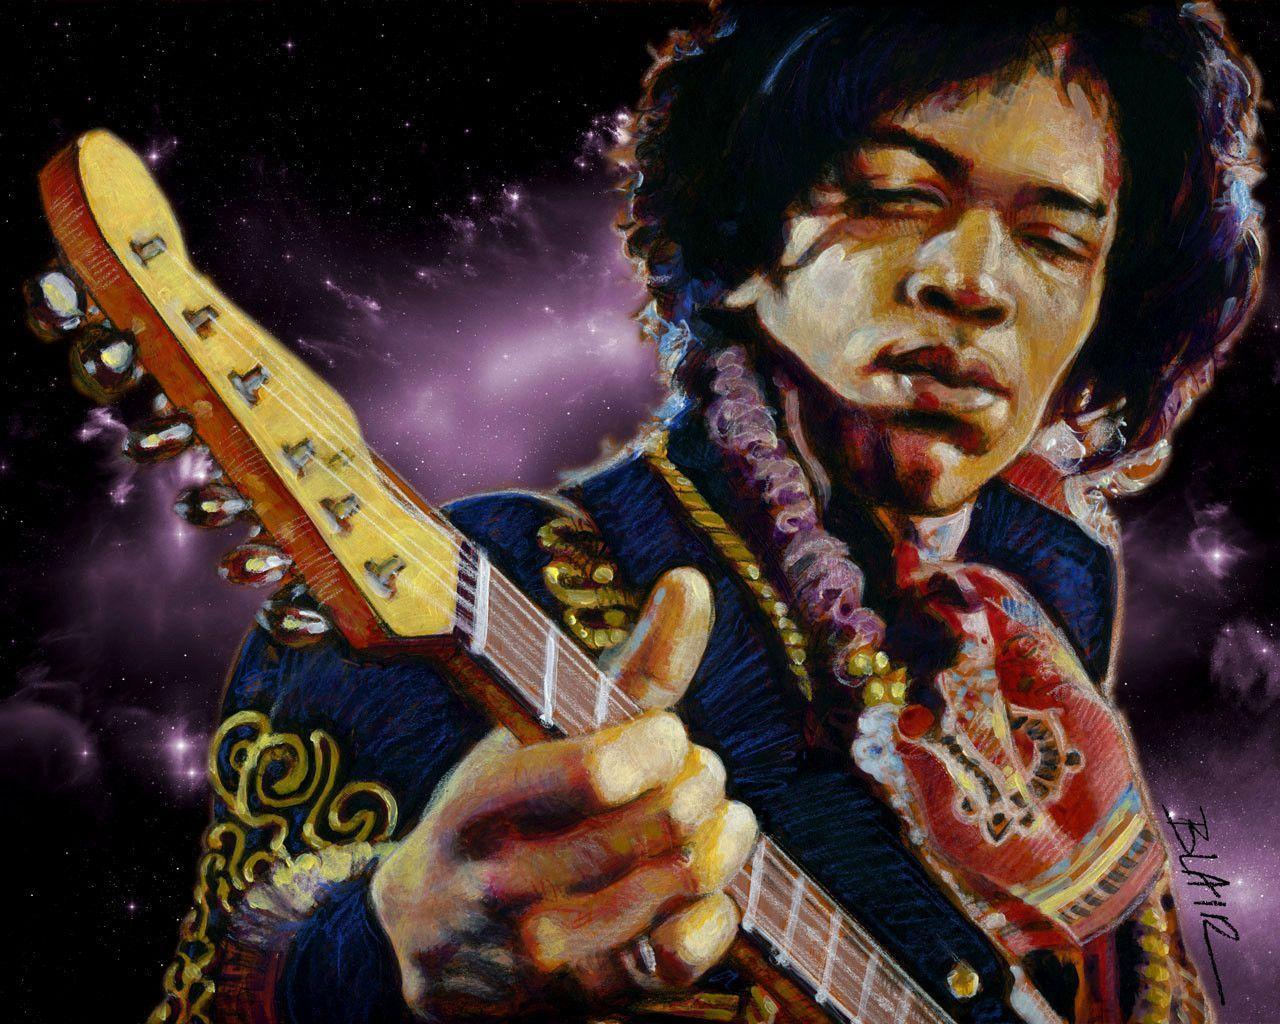 Free Jimi Hendrix wallpaper. Jimi Hendrix wallpaper